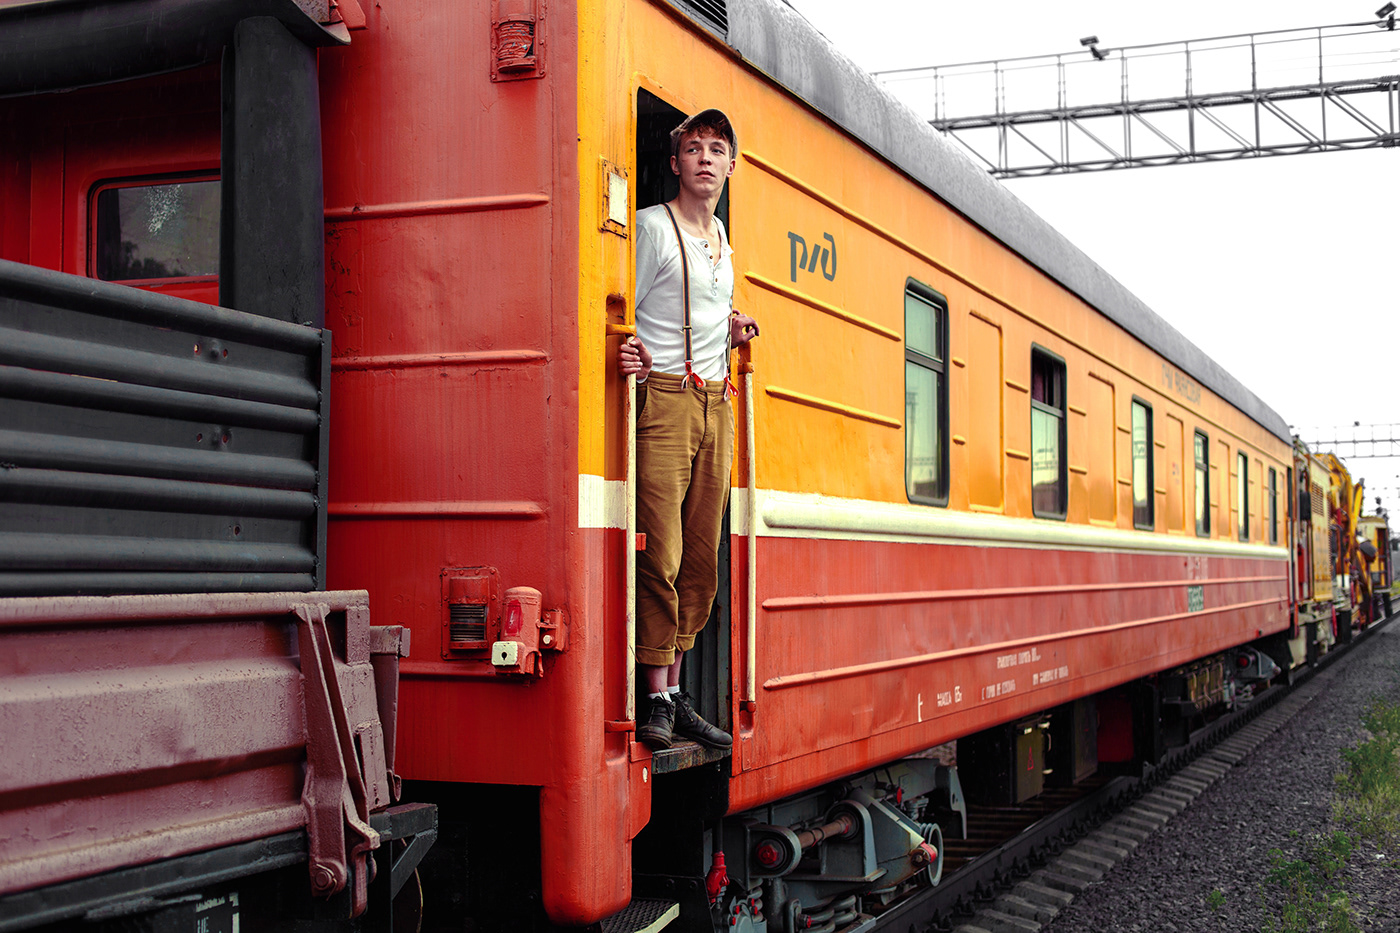 russian railways арт вагон железная дорога люди поезд портрет Ра рабочий ржд